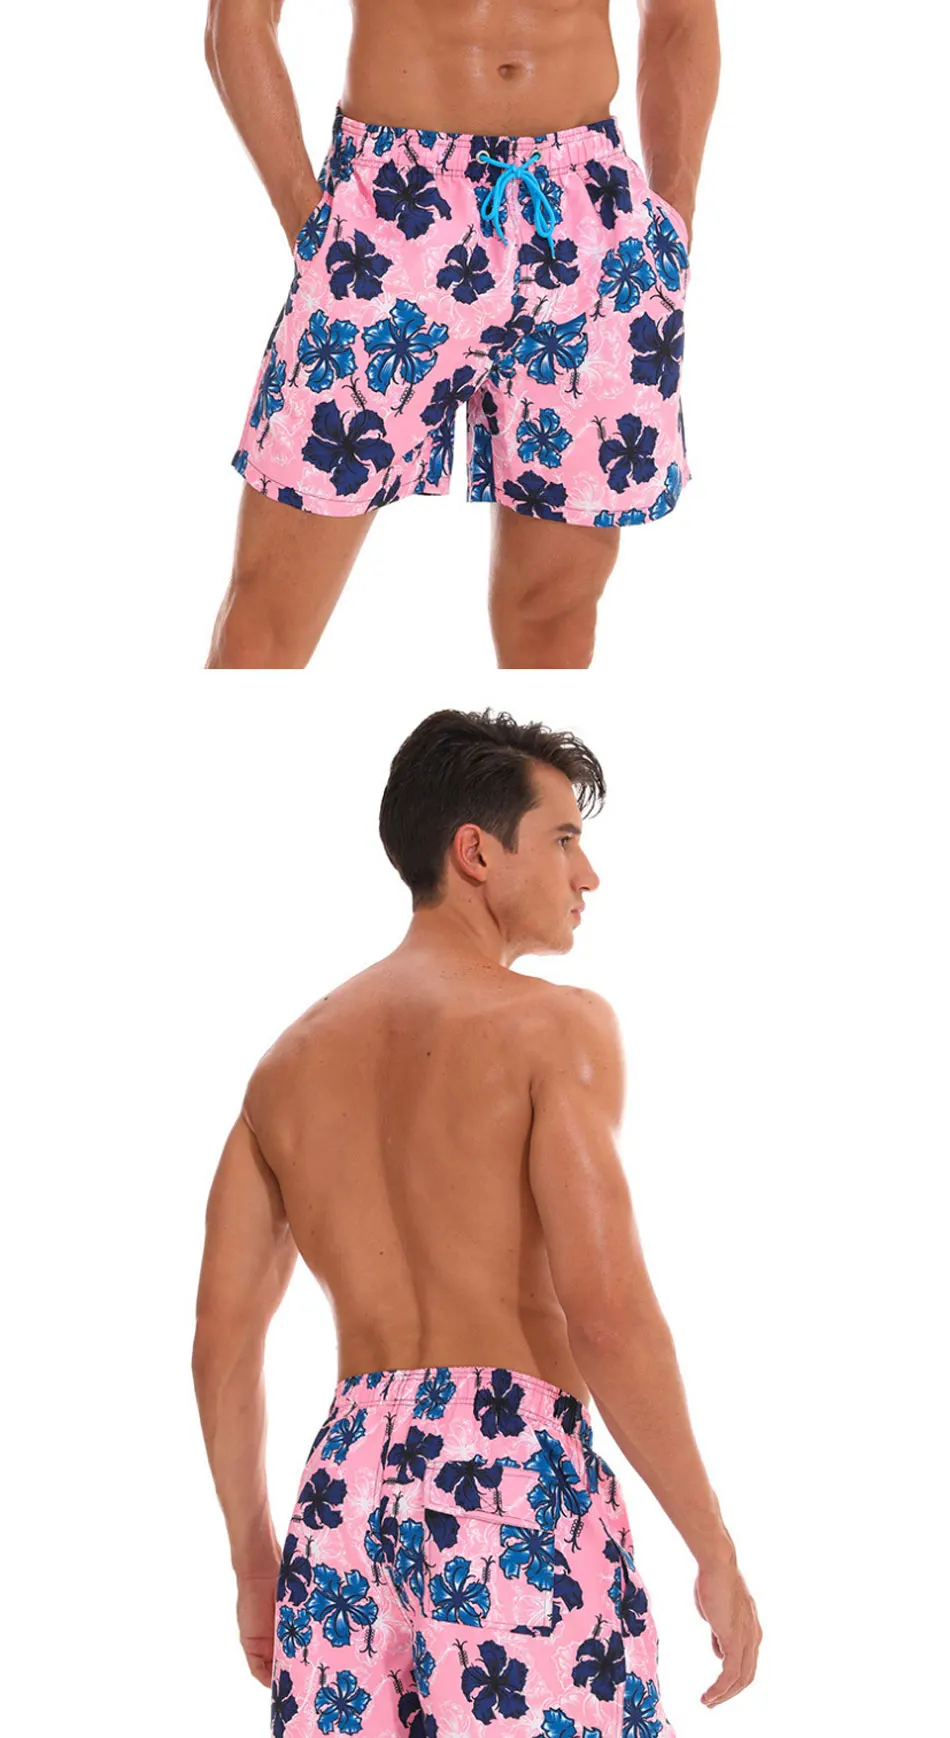 Мужские шорты для плавания с принтом, пляжные шорты с завязками, забавные шорты с сеткой, купальные костюмы с подкладкой, купальные костюмы, пляжная одежда, сухая полоска